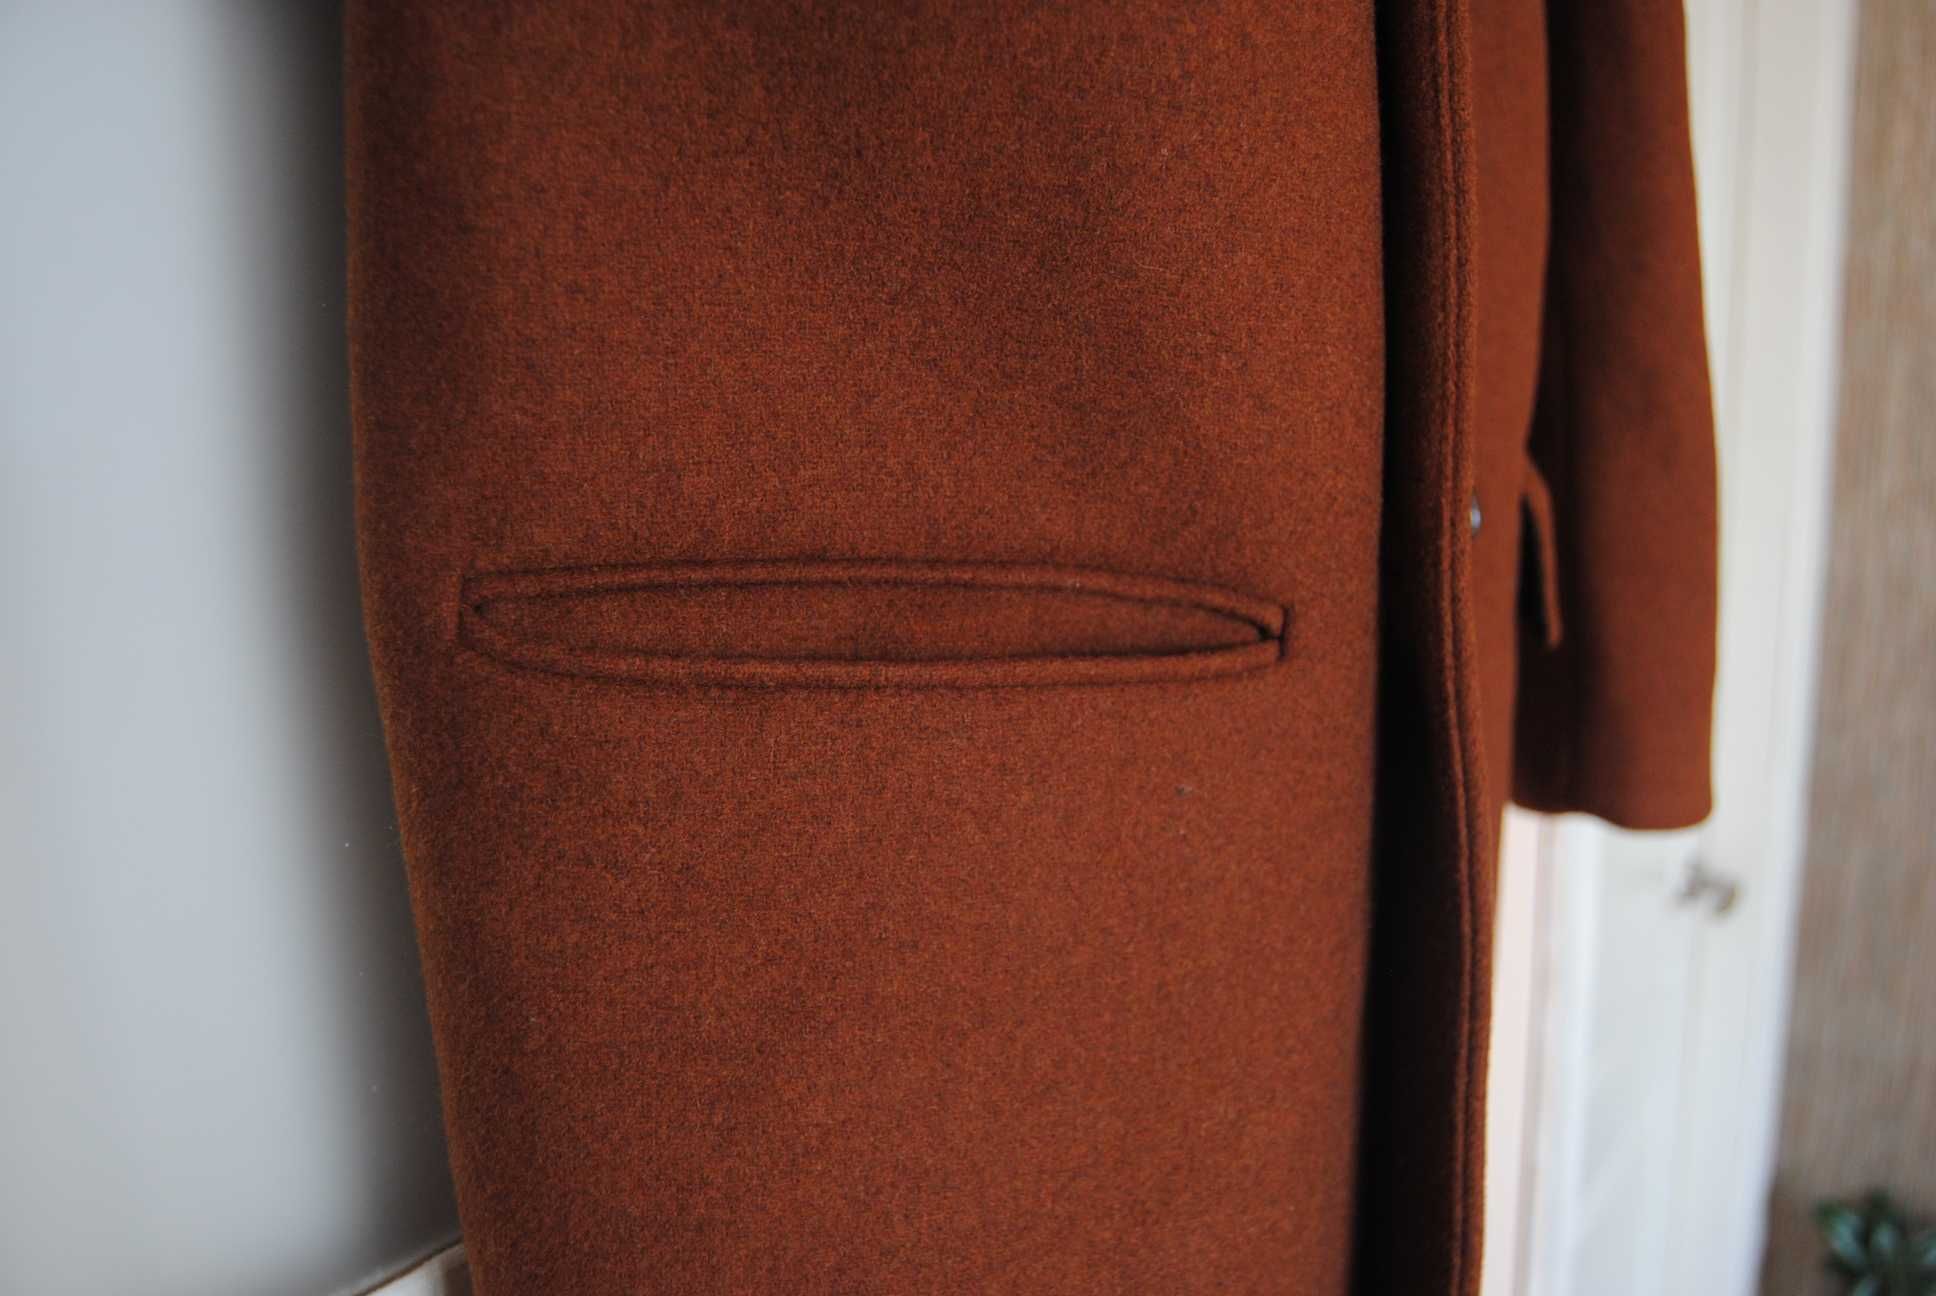 Чоловіче шерстяне пальто / мужское шерстяное пальто H&M р-р 46